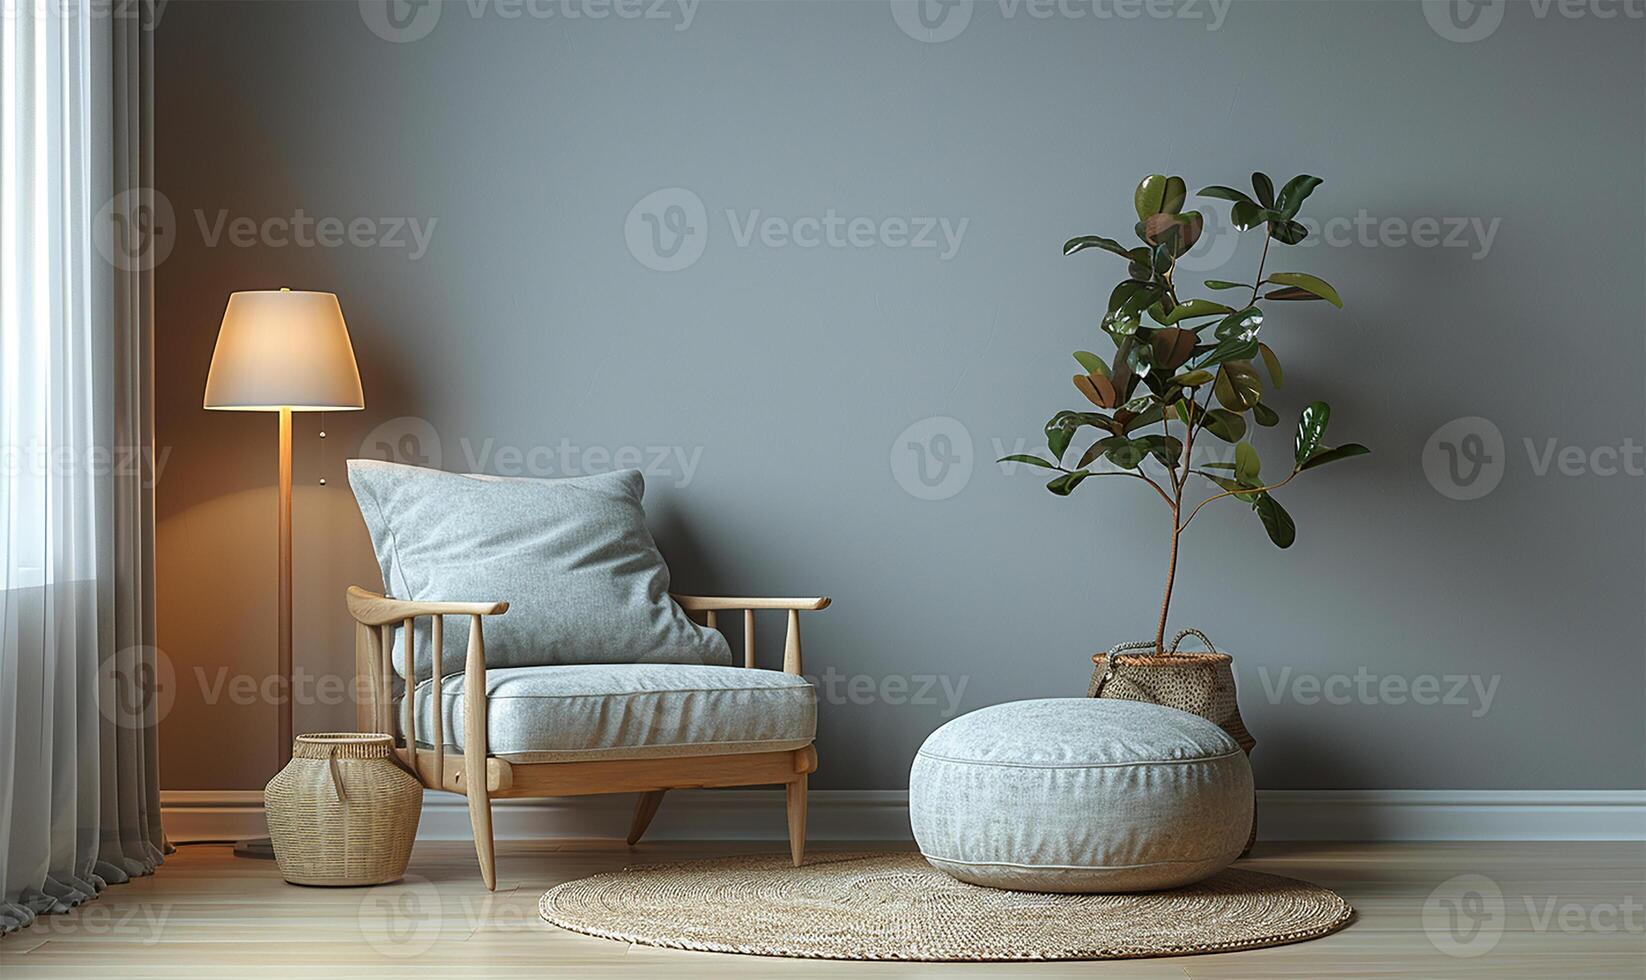 acogedor escandinavo rincón invita relajación suave texturas, calentar luz de lámpara, y un felpa alfombra dibujar usted en. foto